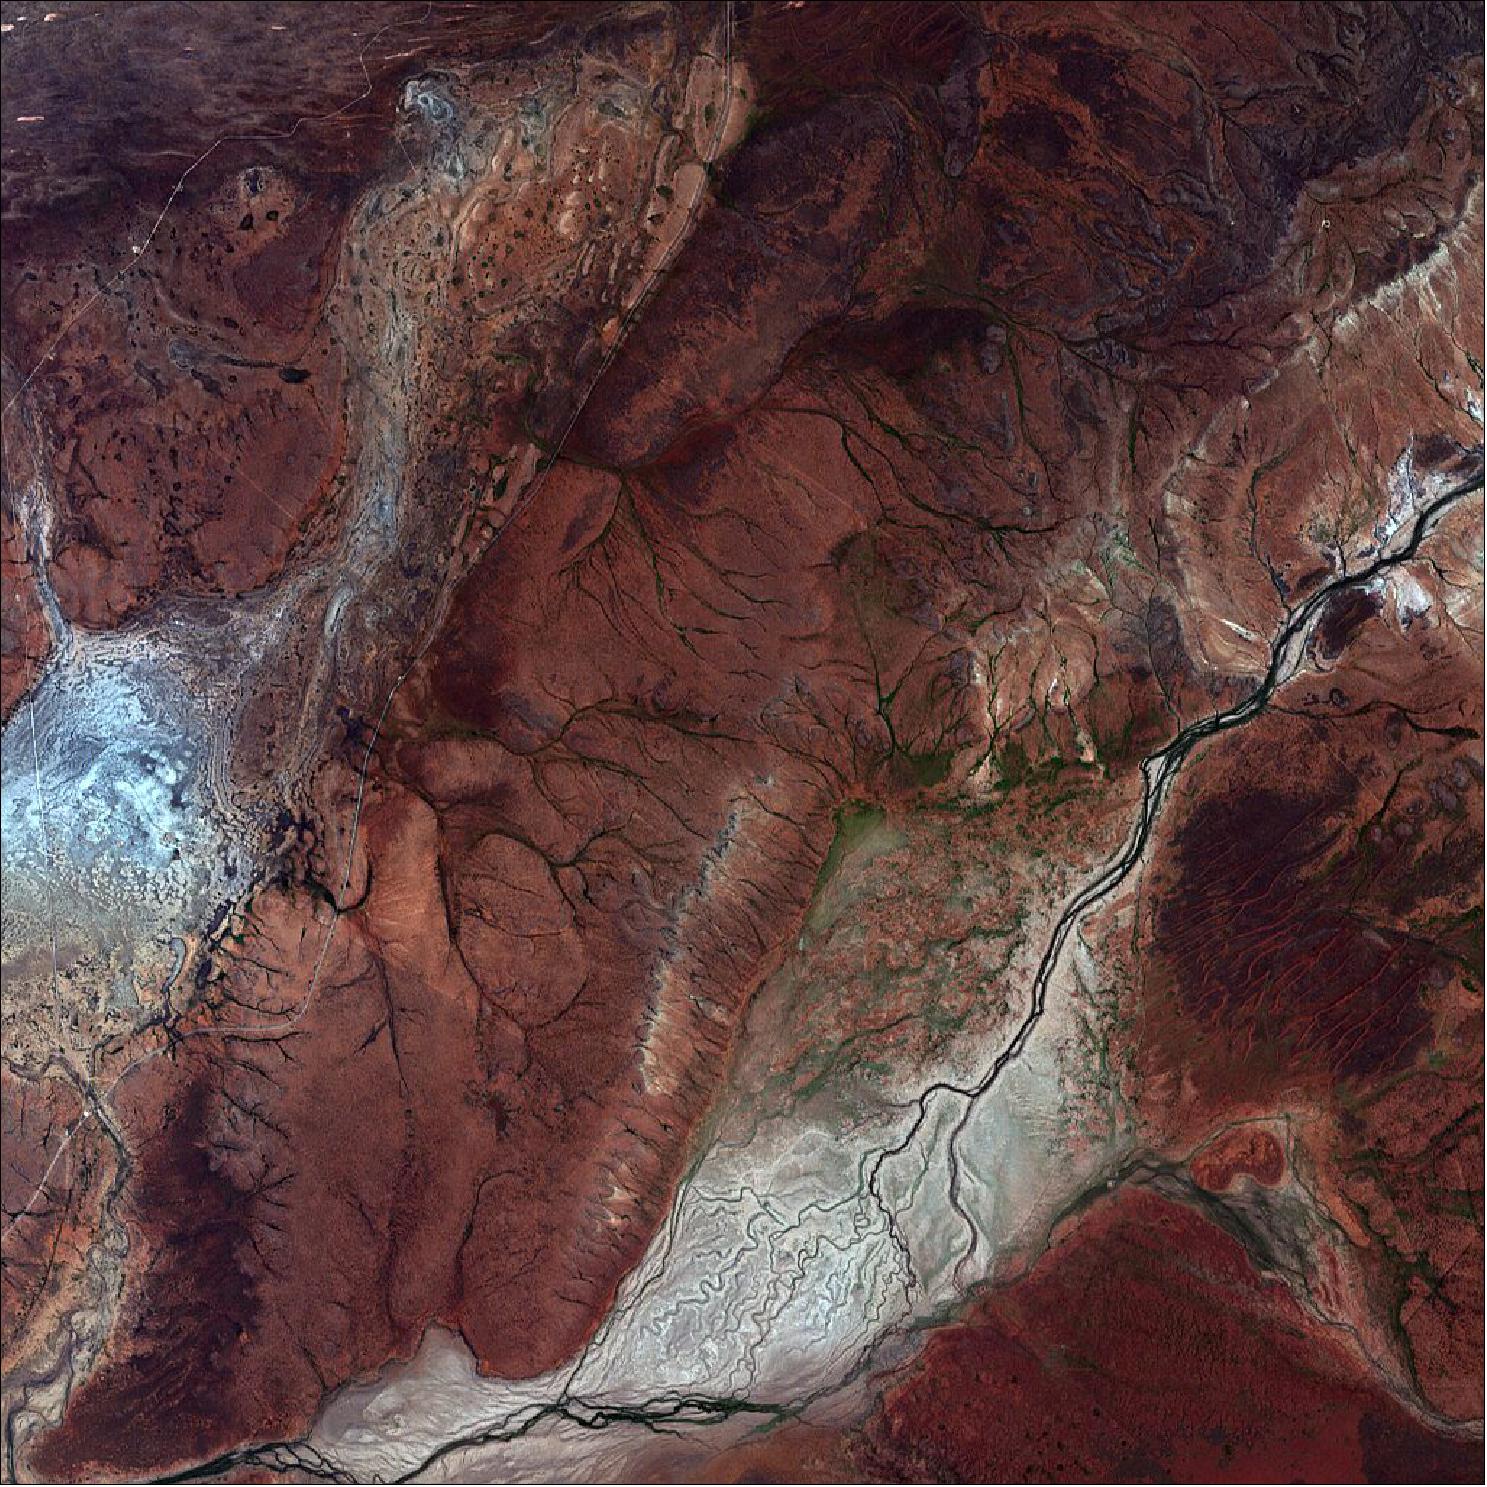 Figure 18: DESIS image of Northwestern Australia observed on 29 November 2019 (image credit: DLR)